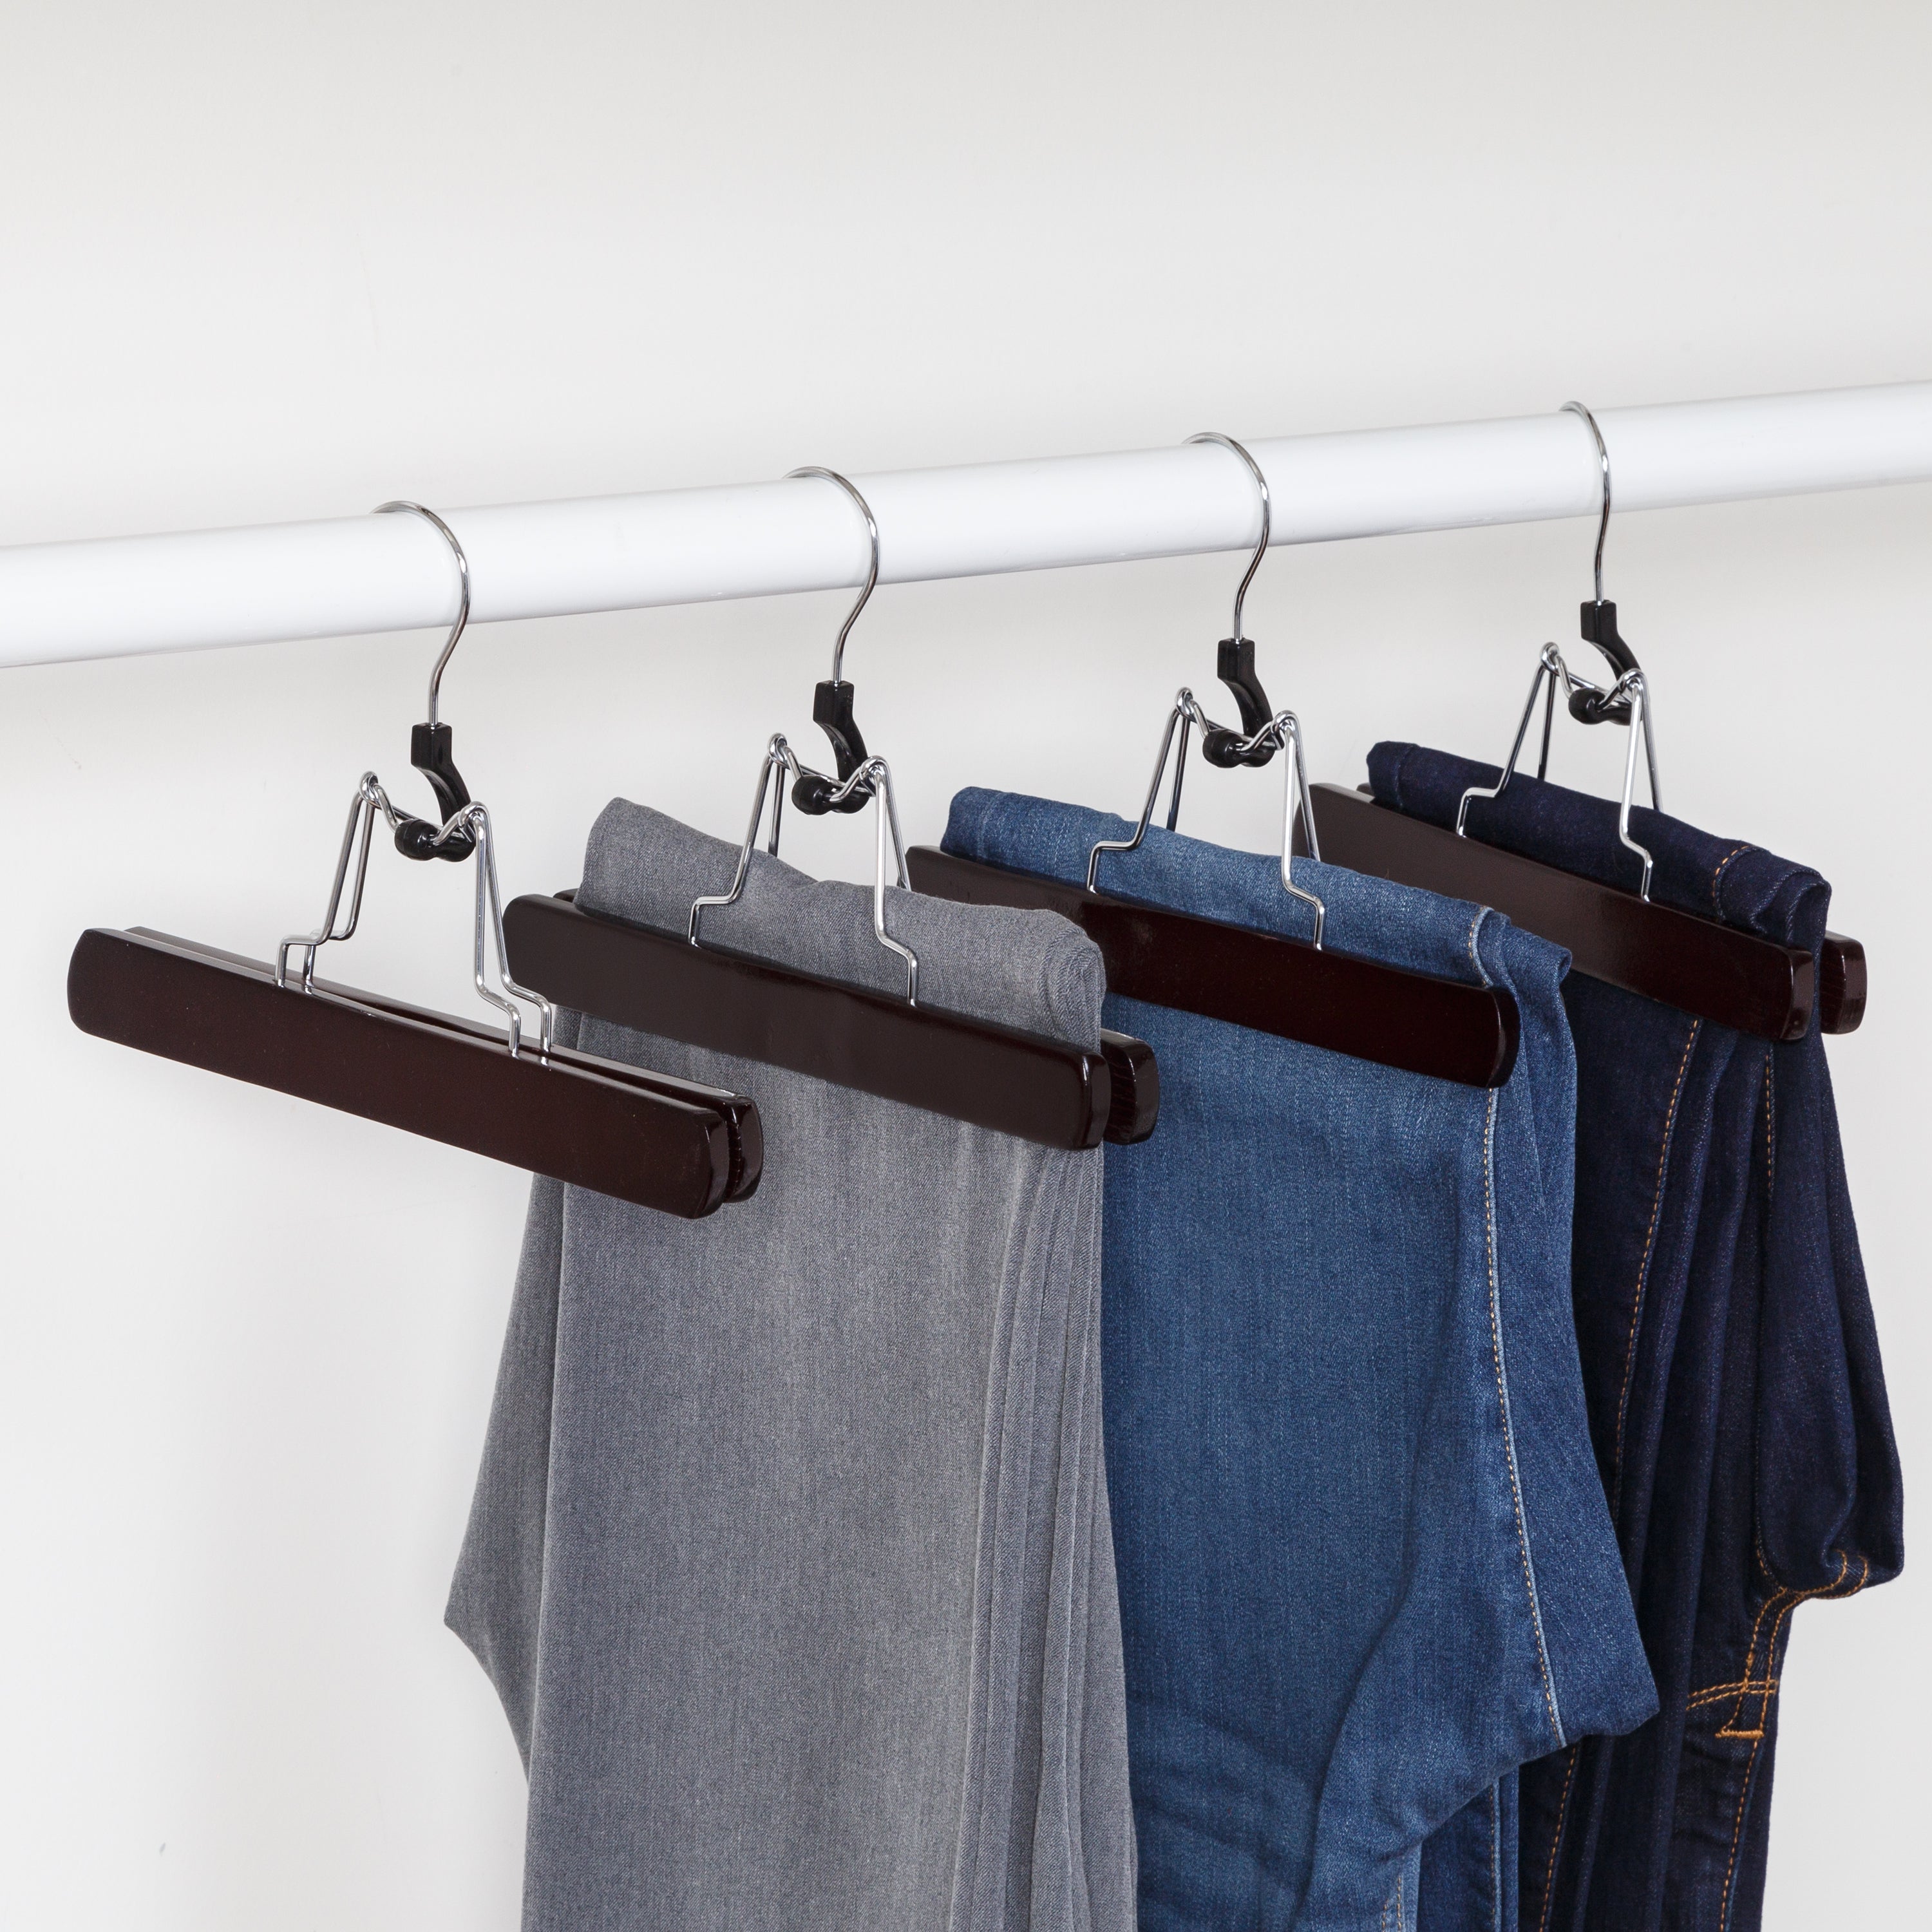 Orwell Trouser Skirt Clothes Wooden Clamp Hanger with NonSlip Inner  Grip2pk  eBay